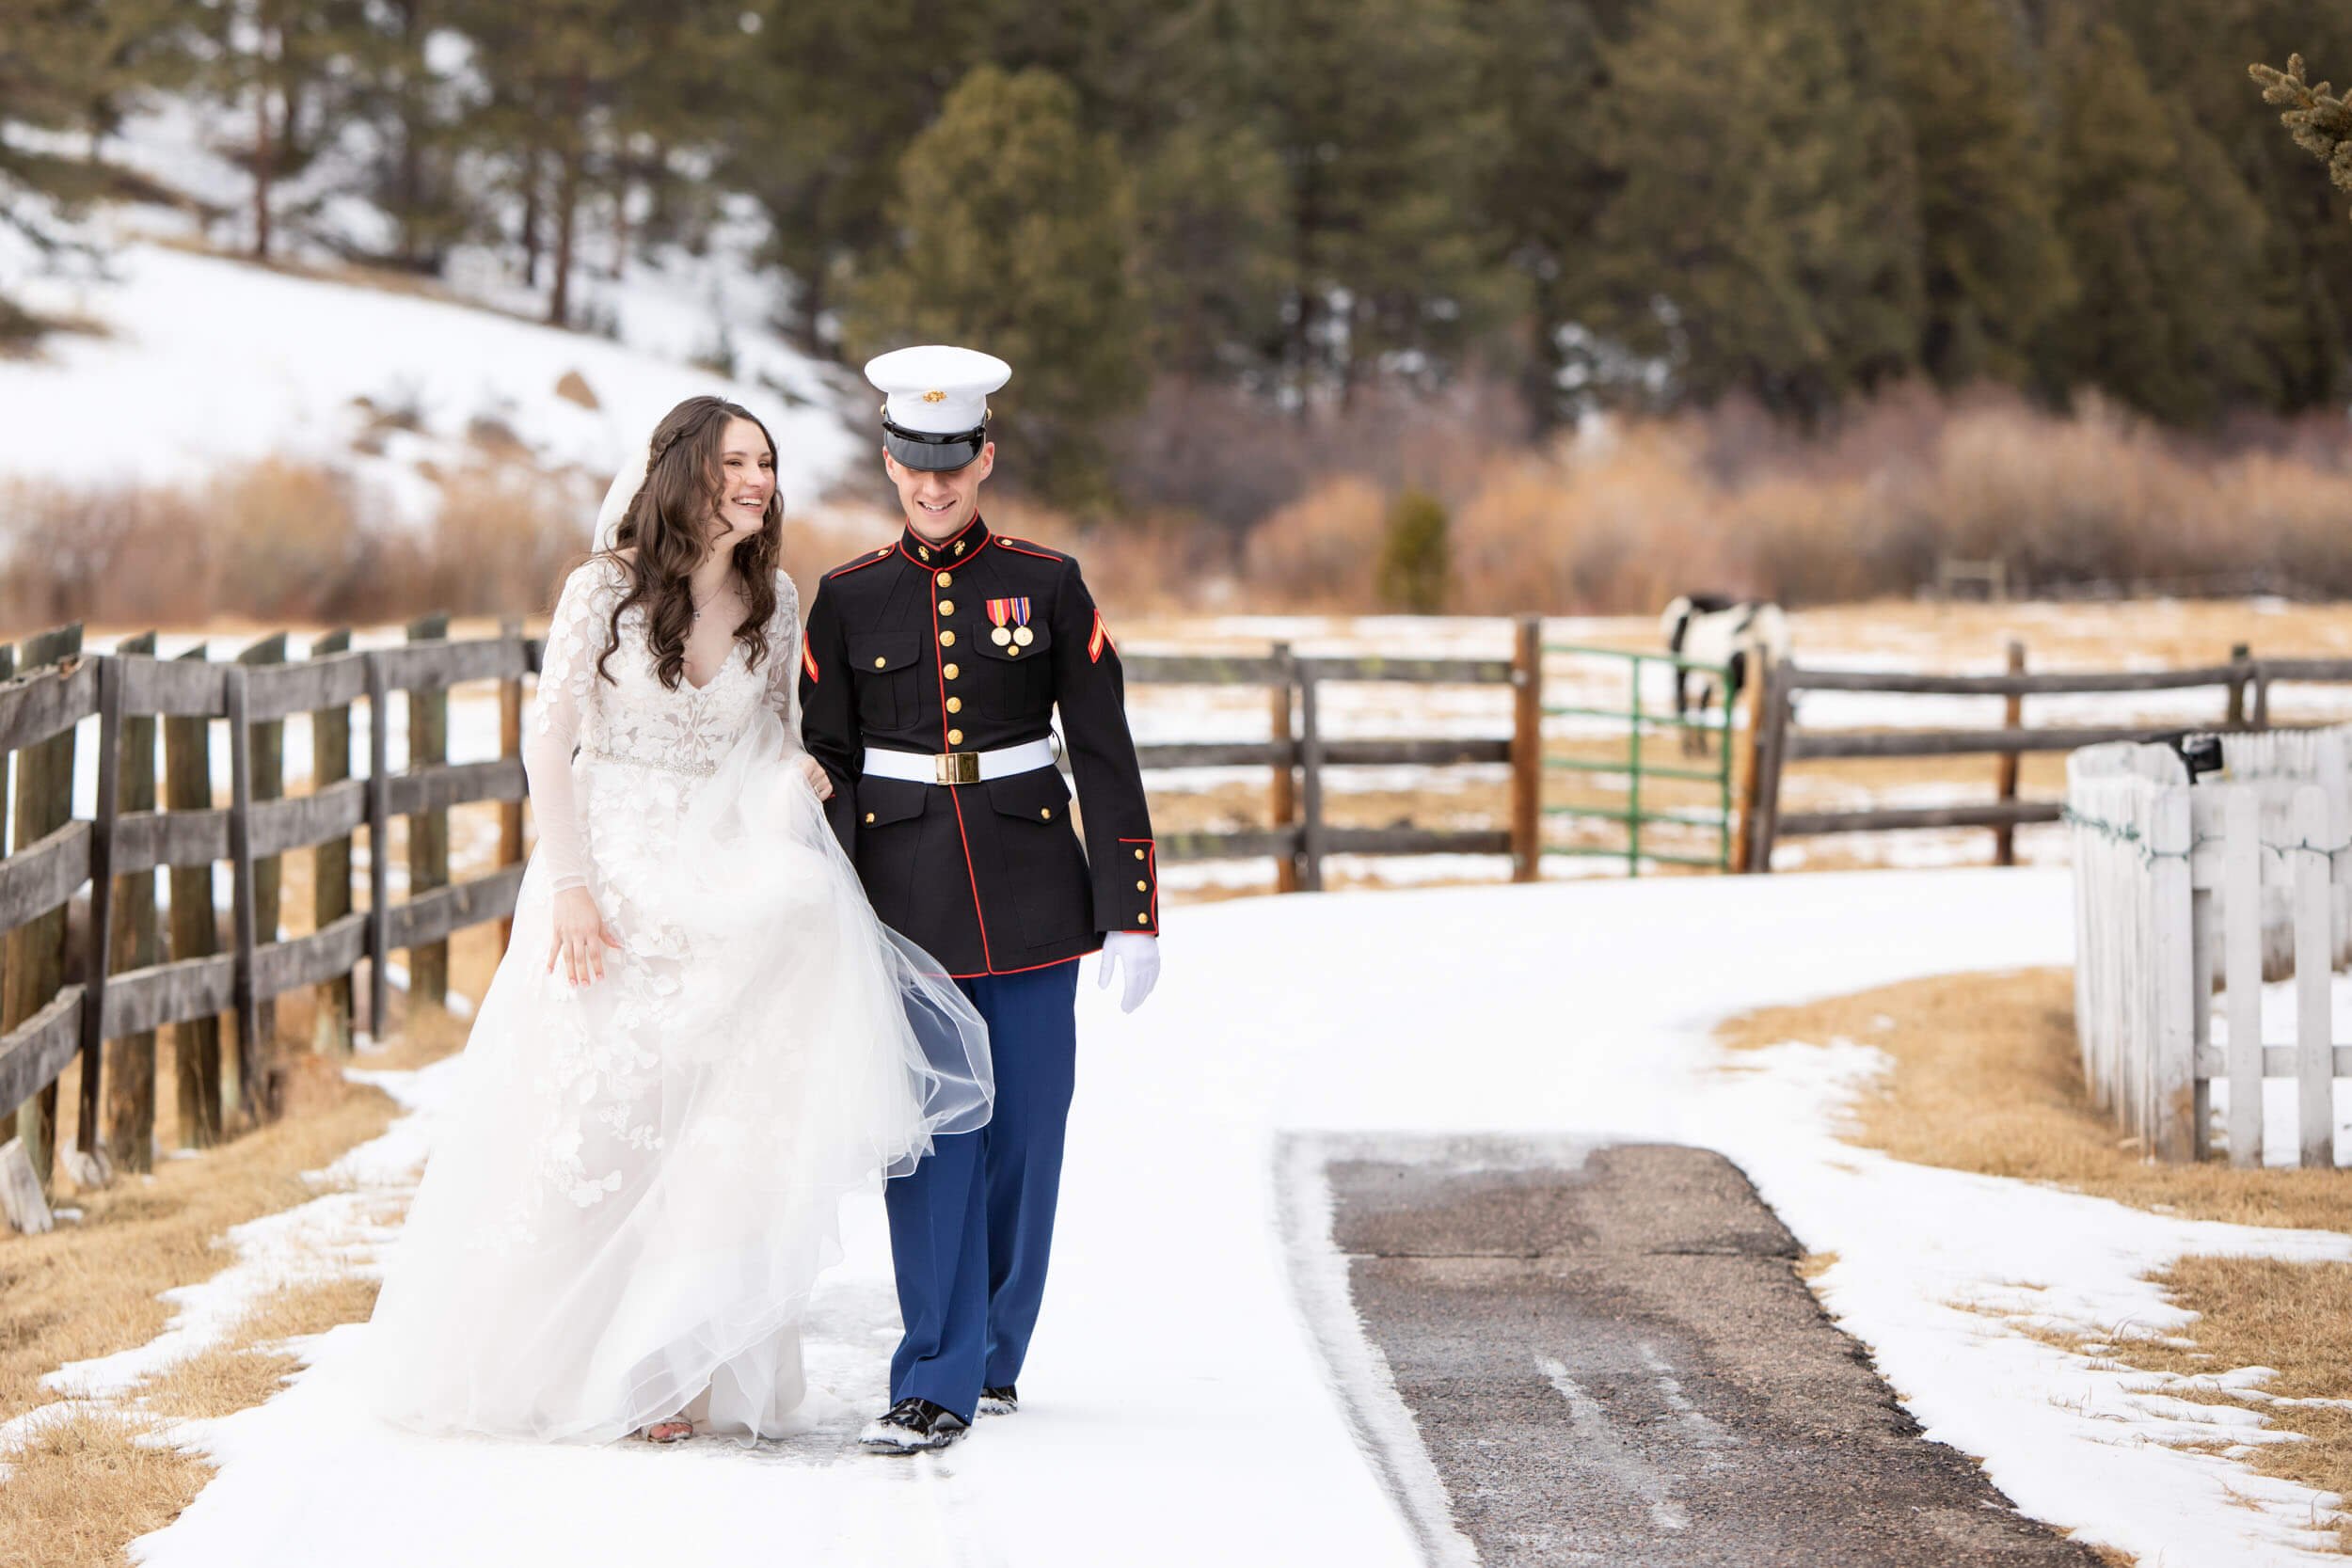 Winter Wedding Outdoor Photos- CliftonMarie Photography